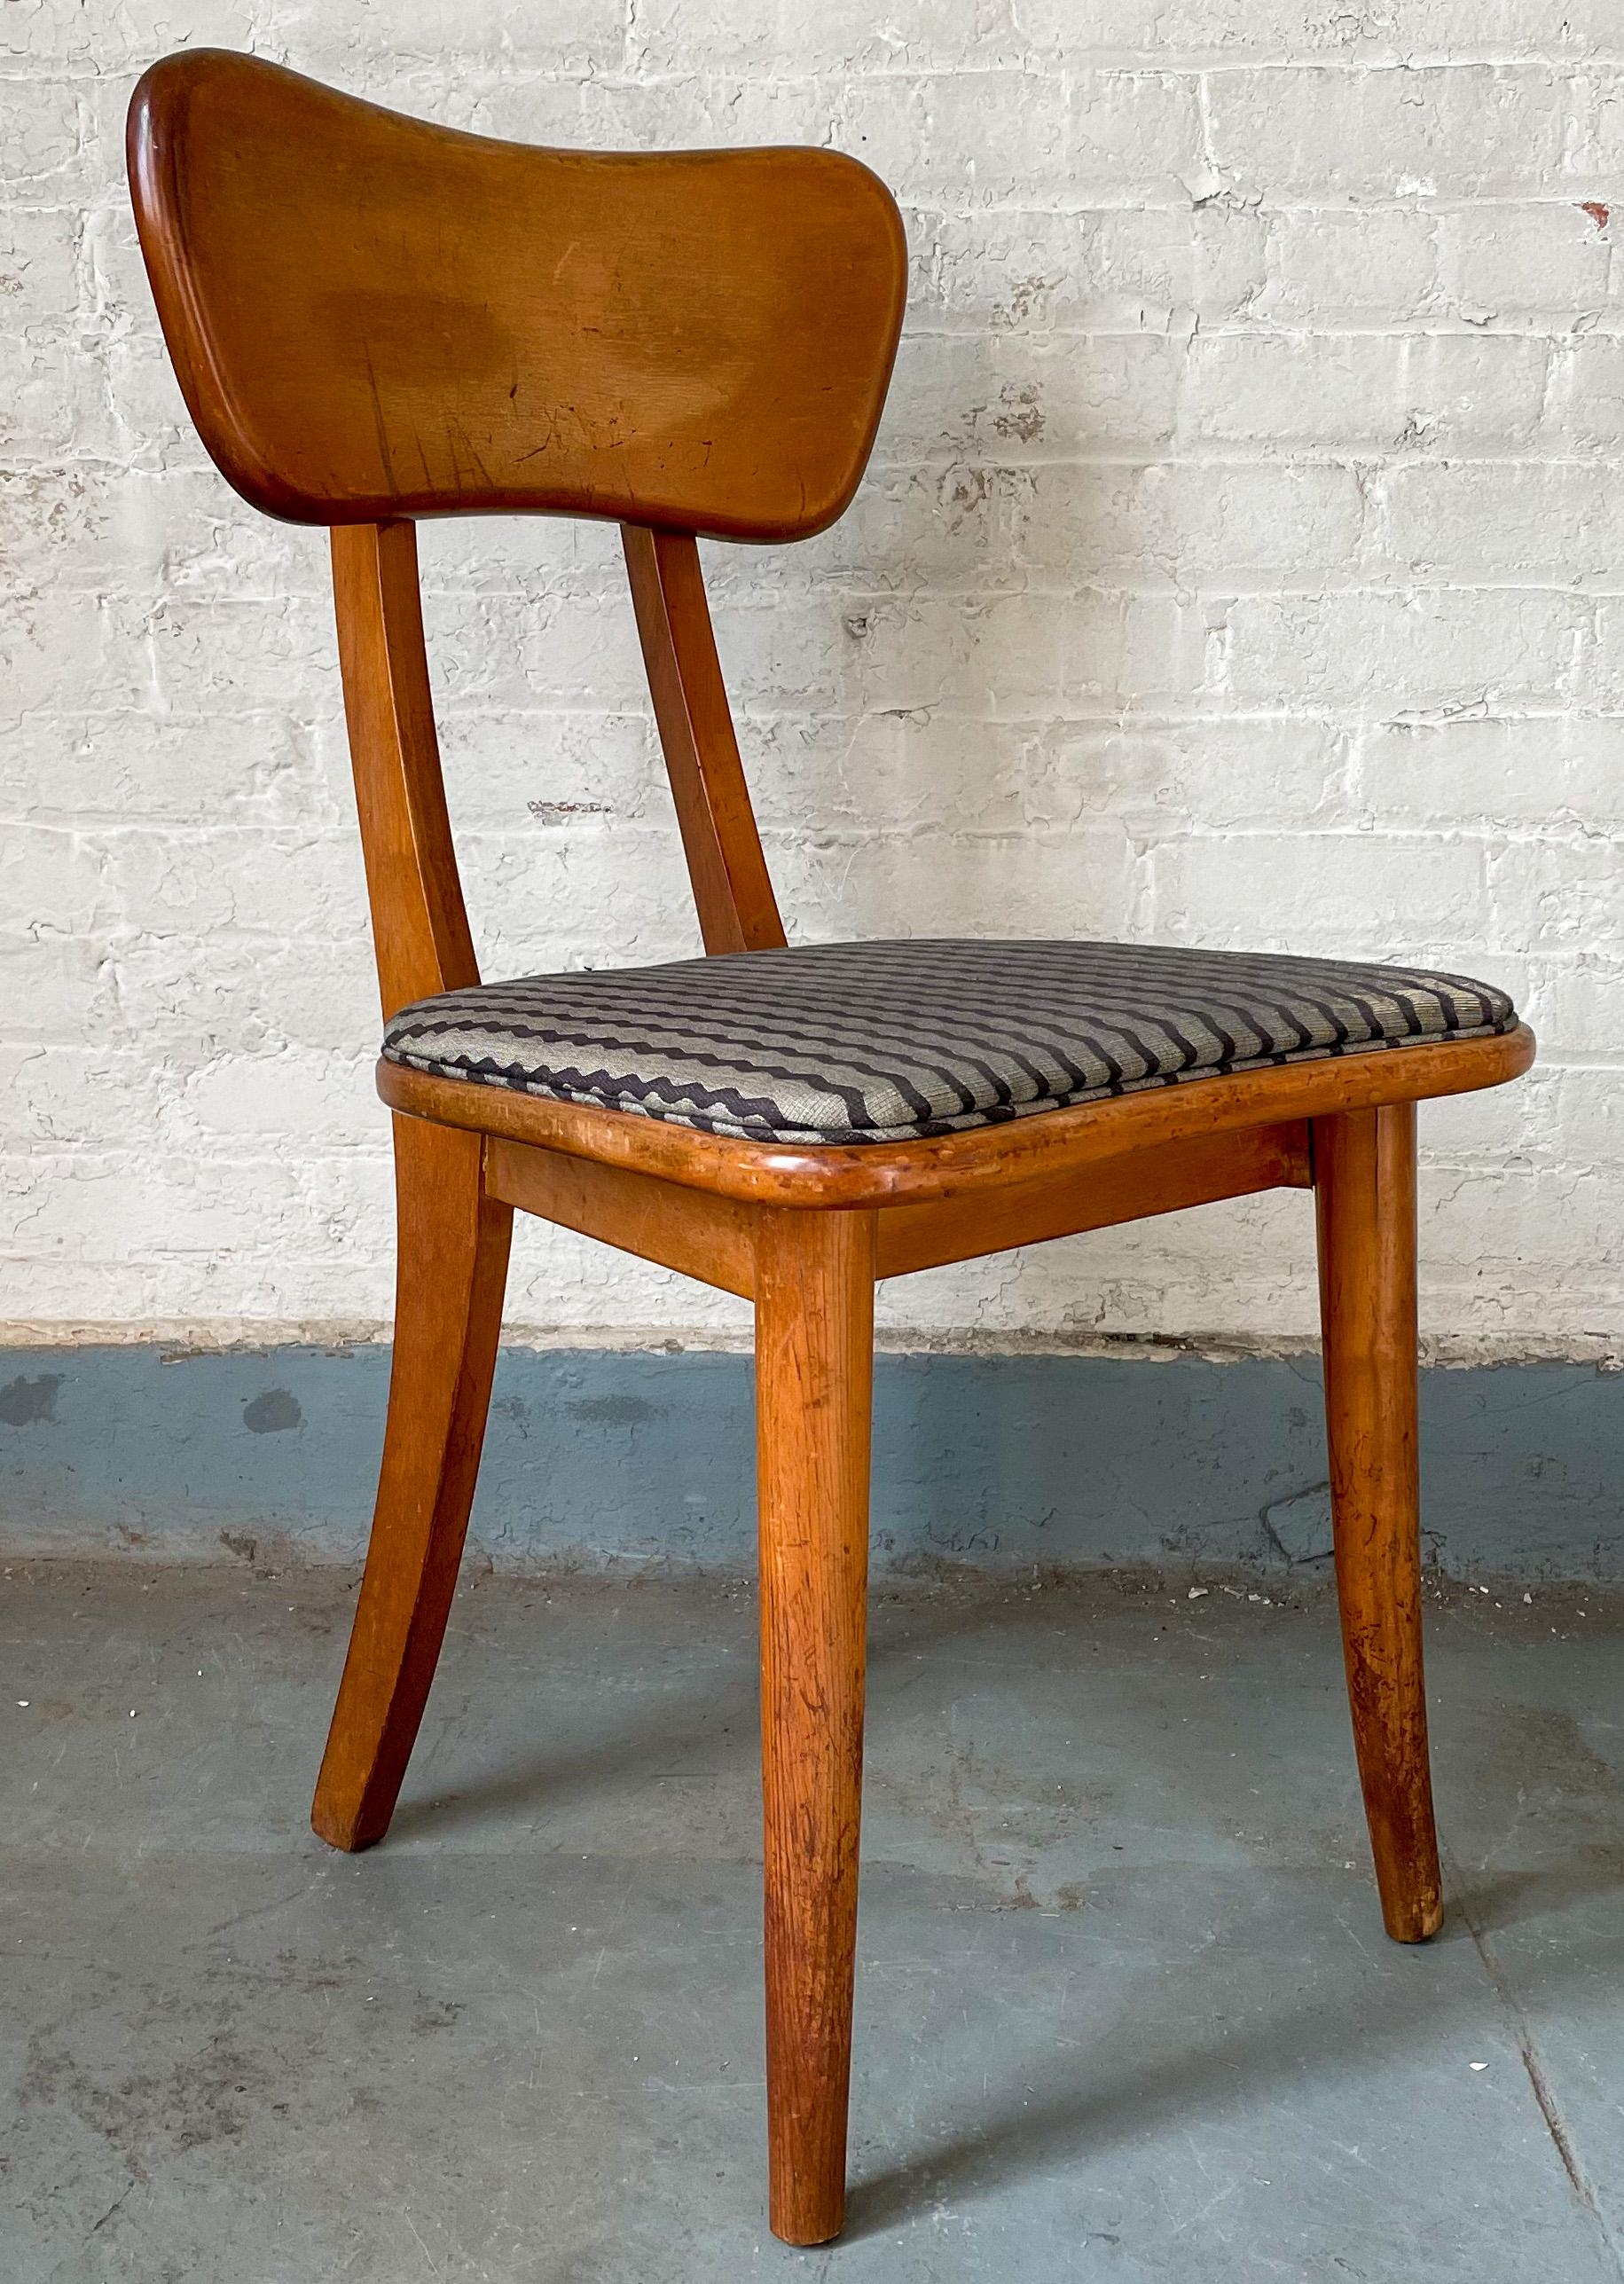 Chaise rare, primée, avec dossier réglable par Ann Hatfield et Martin Craig, conçue pour le concours Organic Design in home furnishings 1941 du MoMA. En bouleau massif ; rembourré. Deux disponibles, prix séparés.